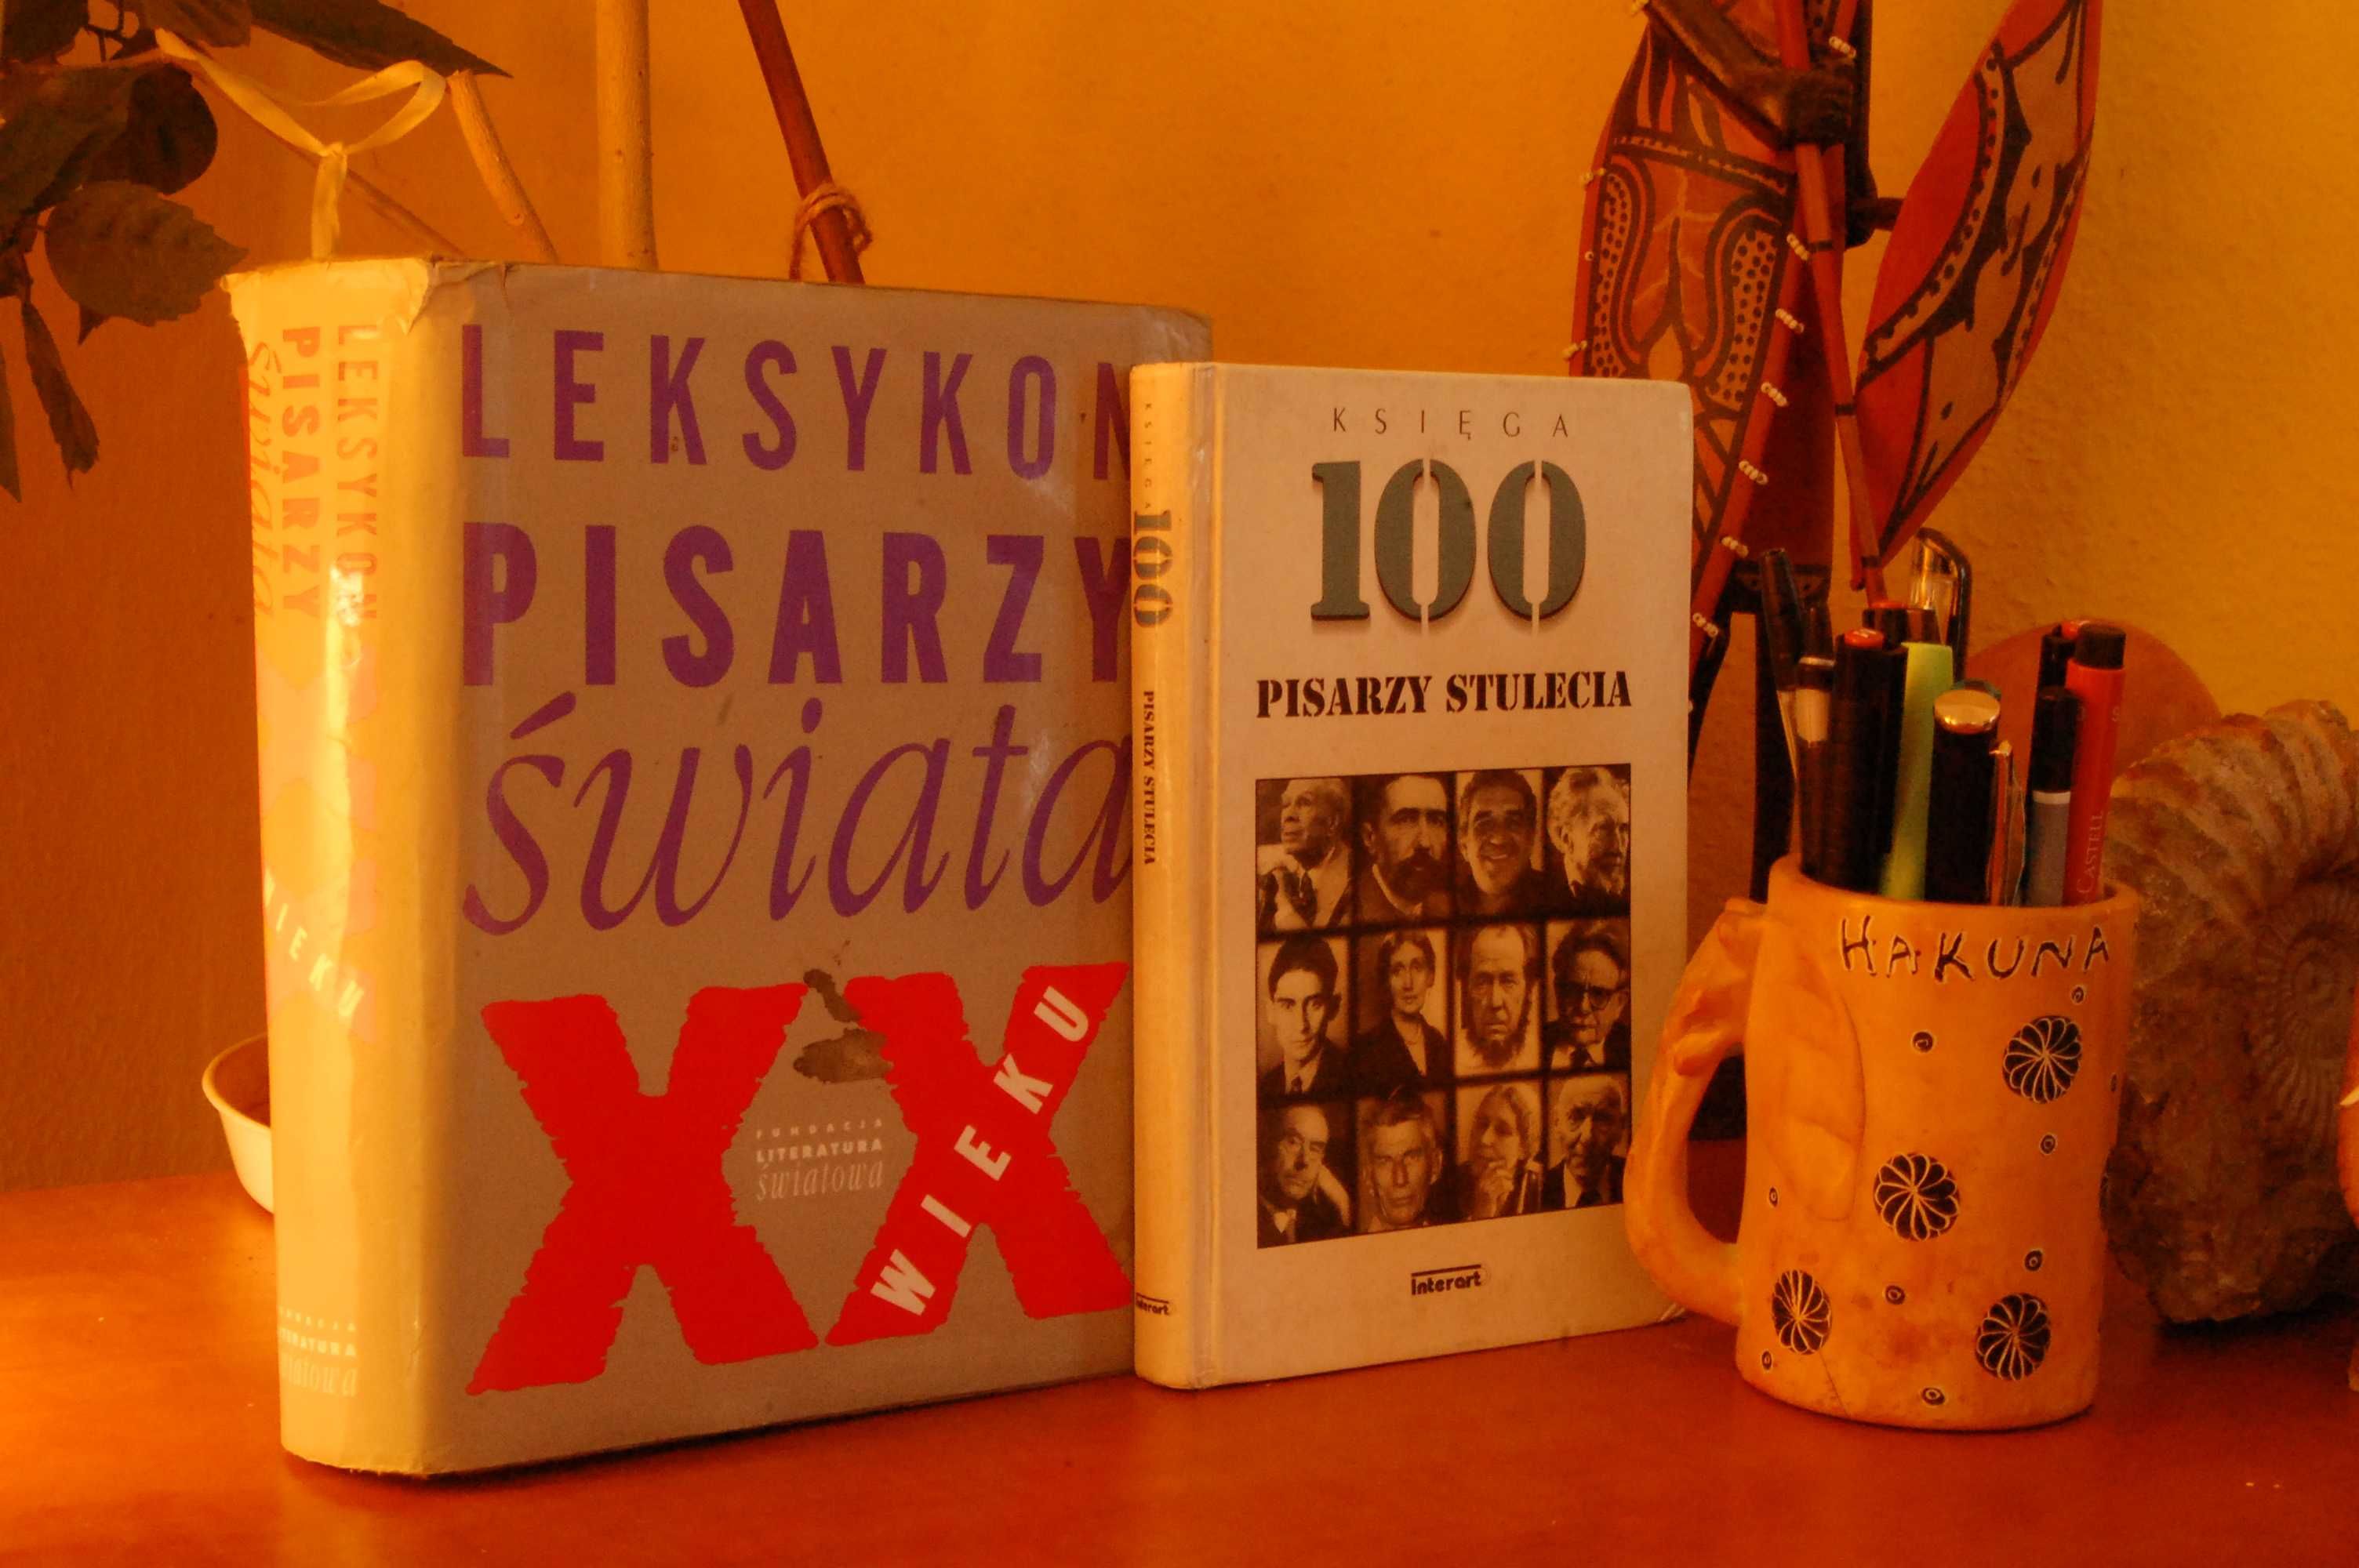 Leksykon pisarzy świata. 100 pisarzy stulecia